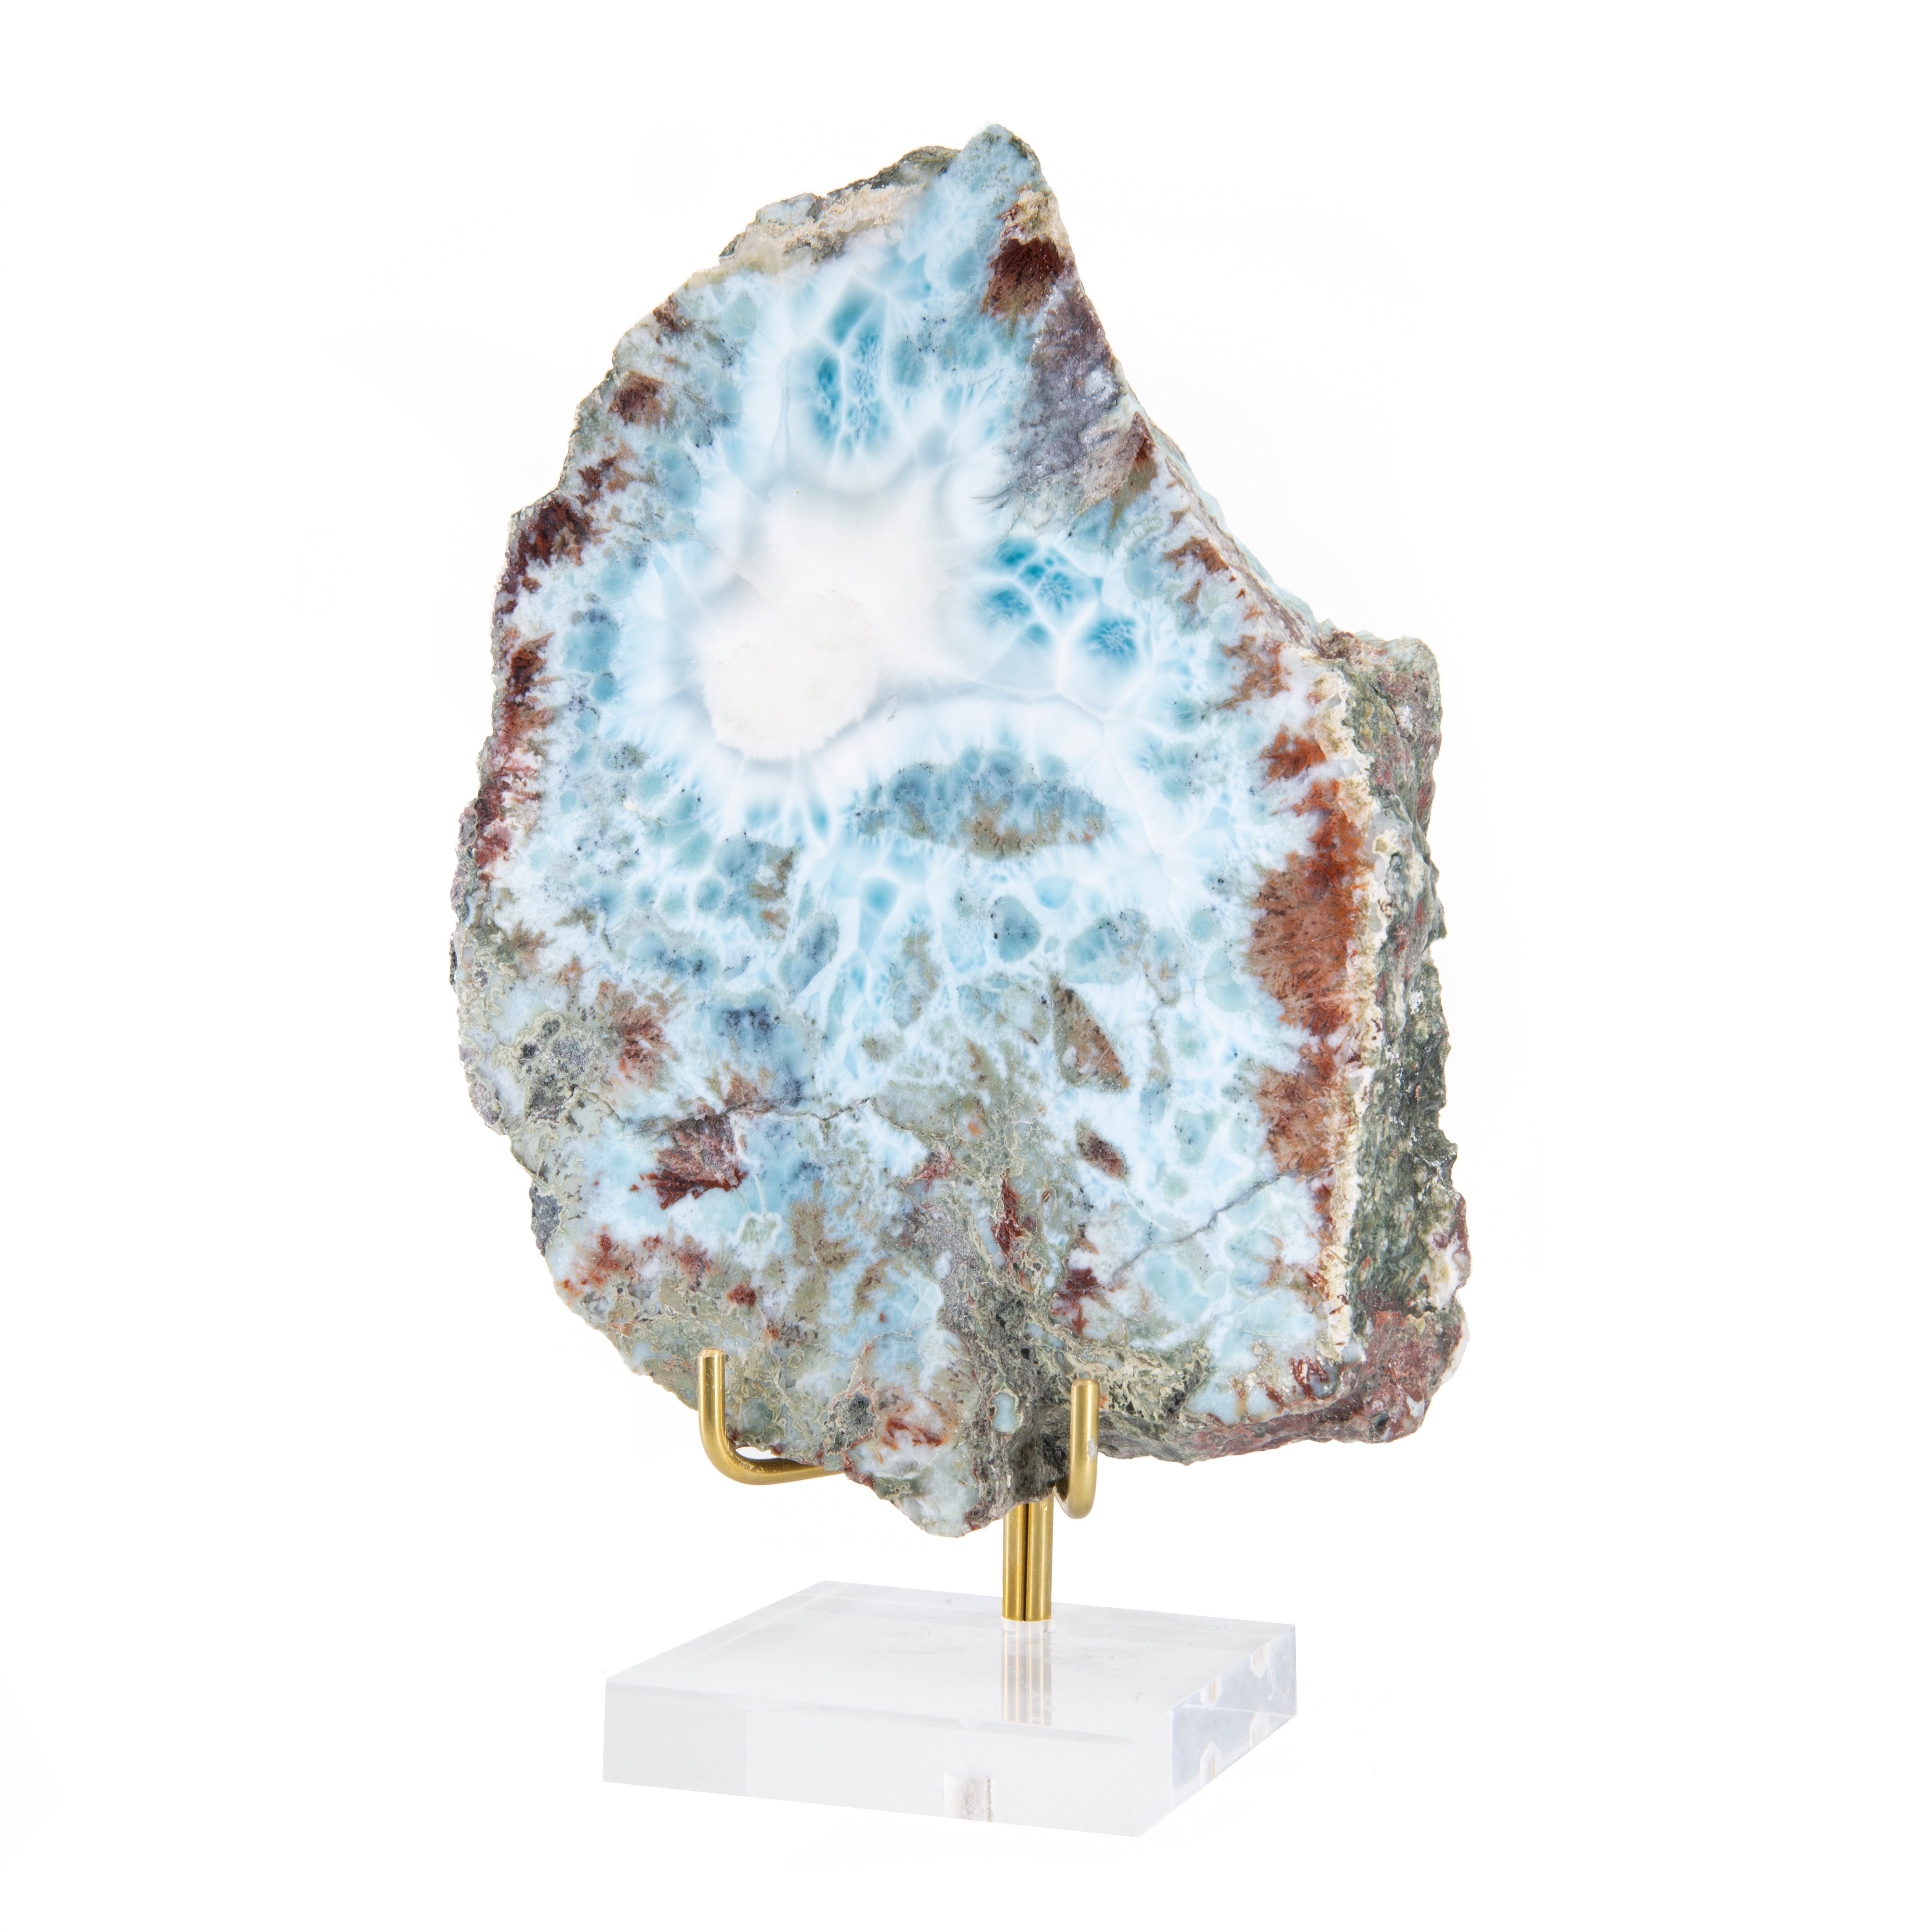 Larimar 5.8" Partial Polished Thick Slice - Dominican Republic - GGH-077 - Crystalarium